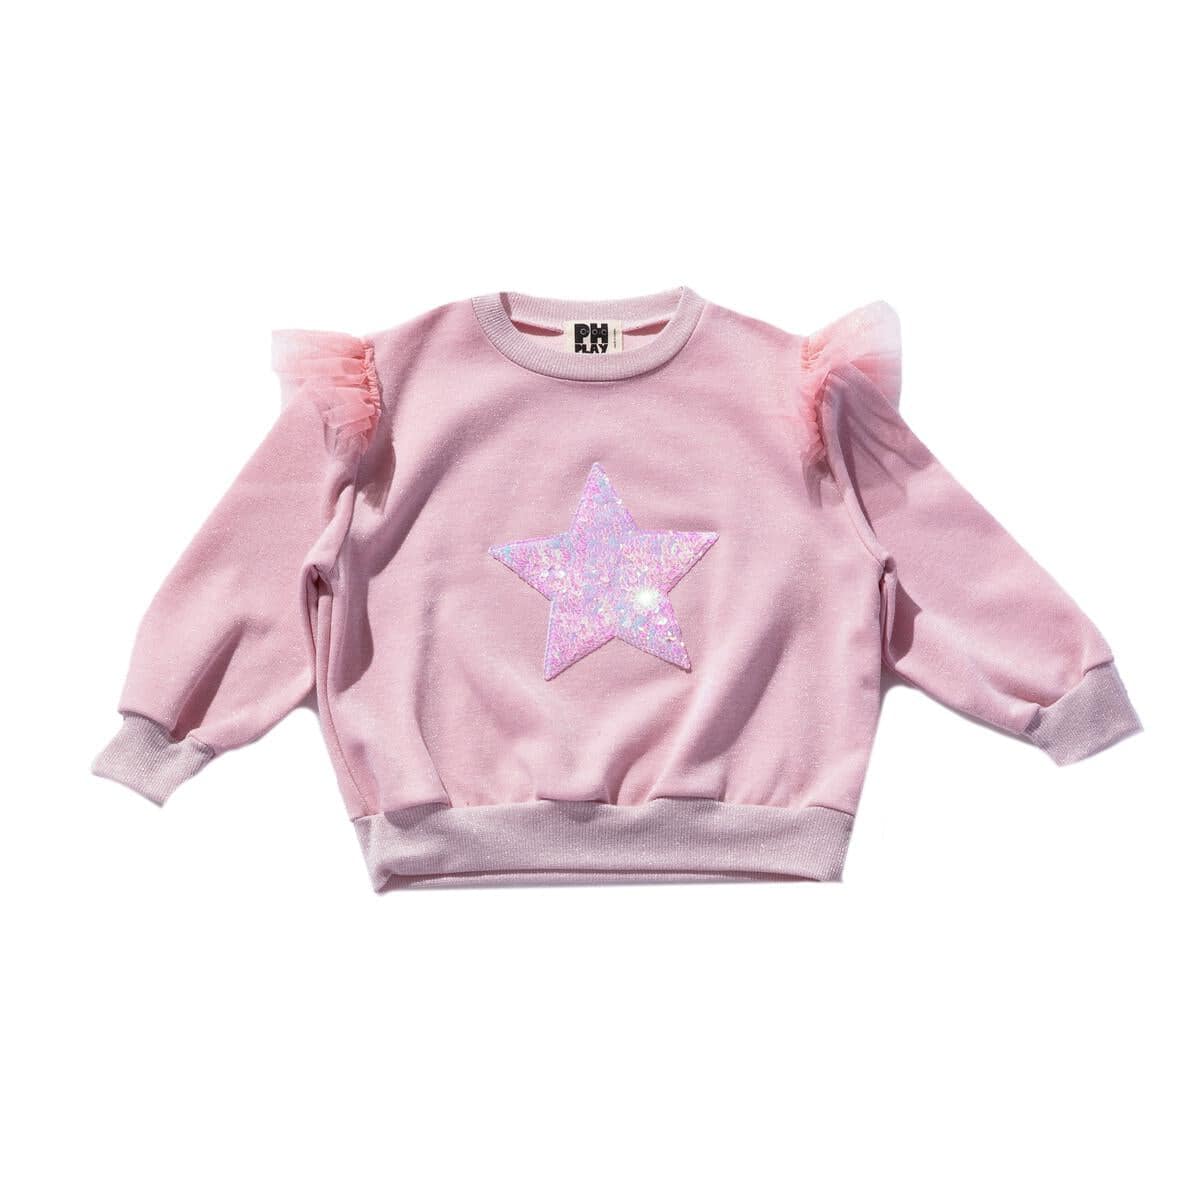 Pink Star Sweatshirt & Pant Set - Twinkle Twinkle Little One